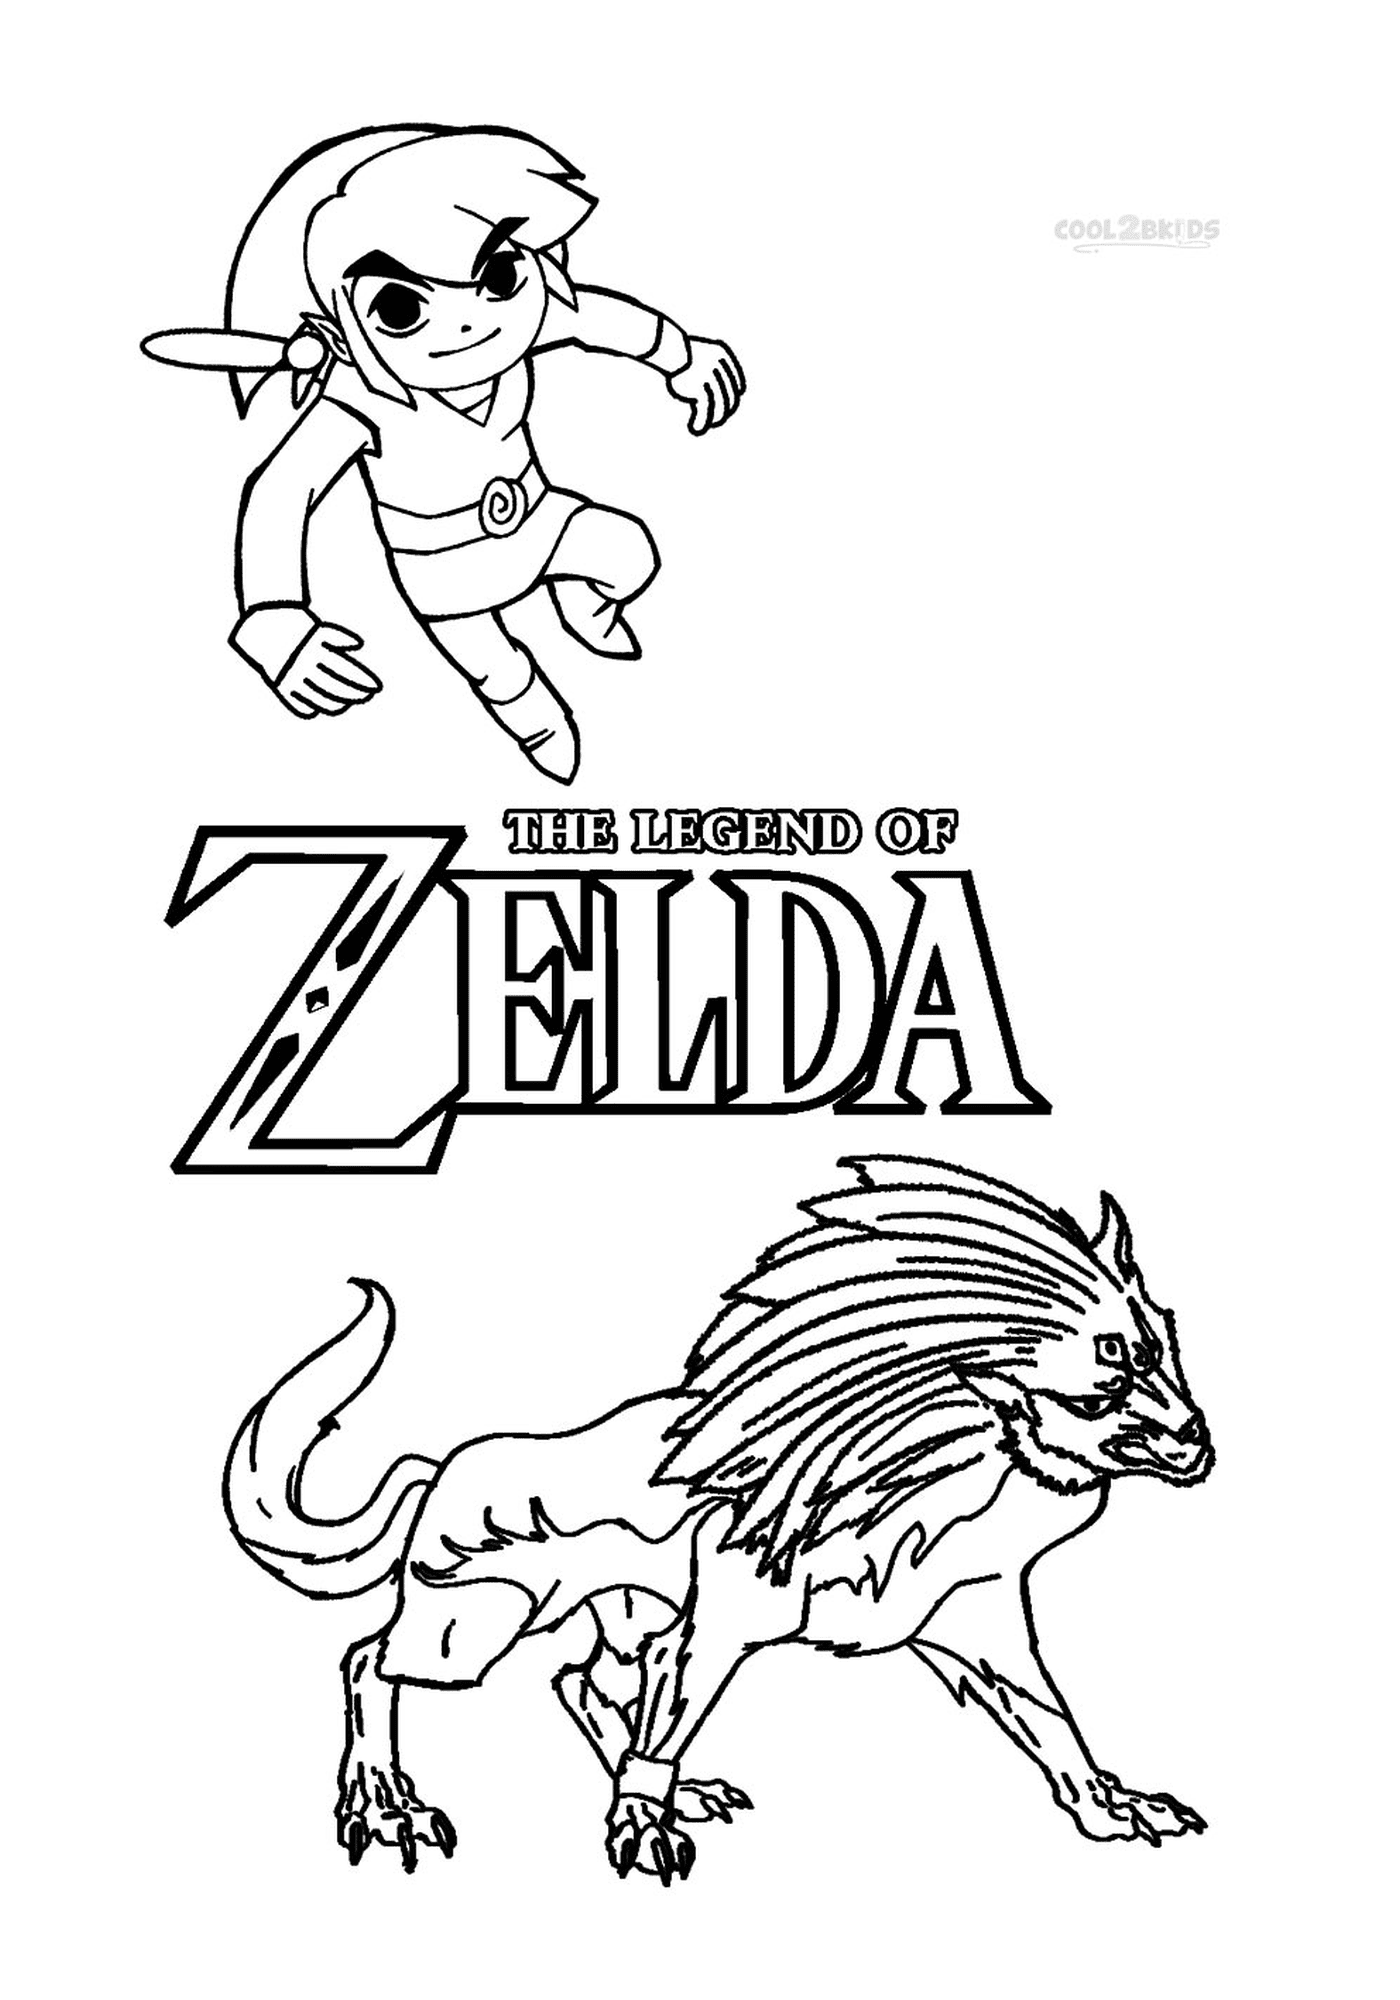  La leggenda dell'affascinante Zelda 